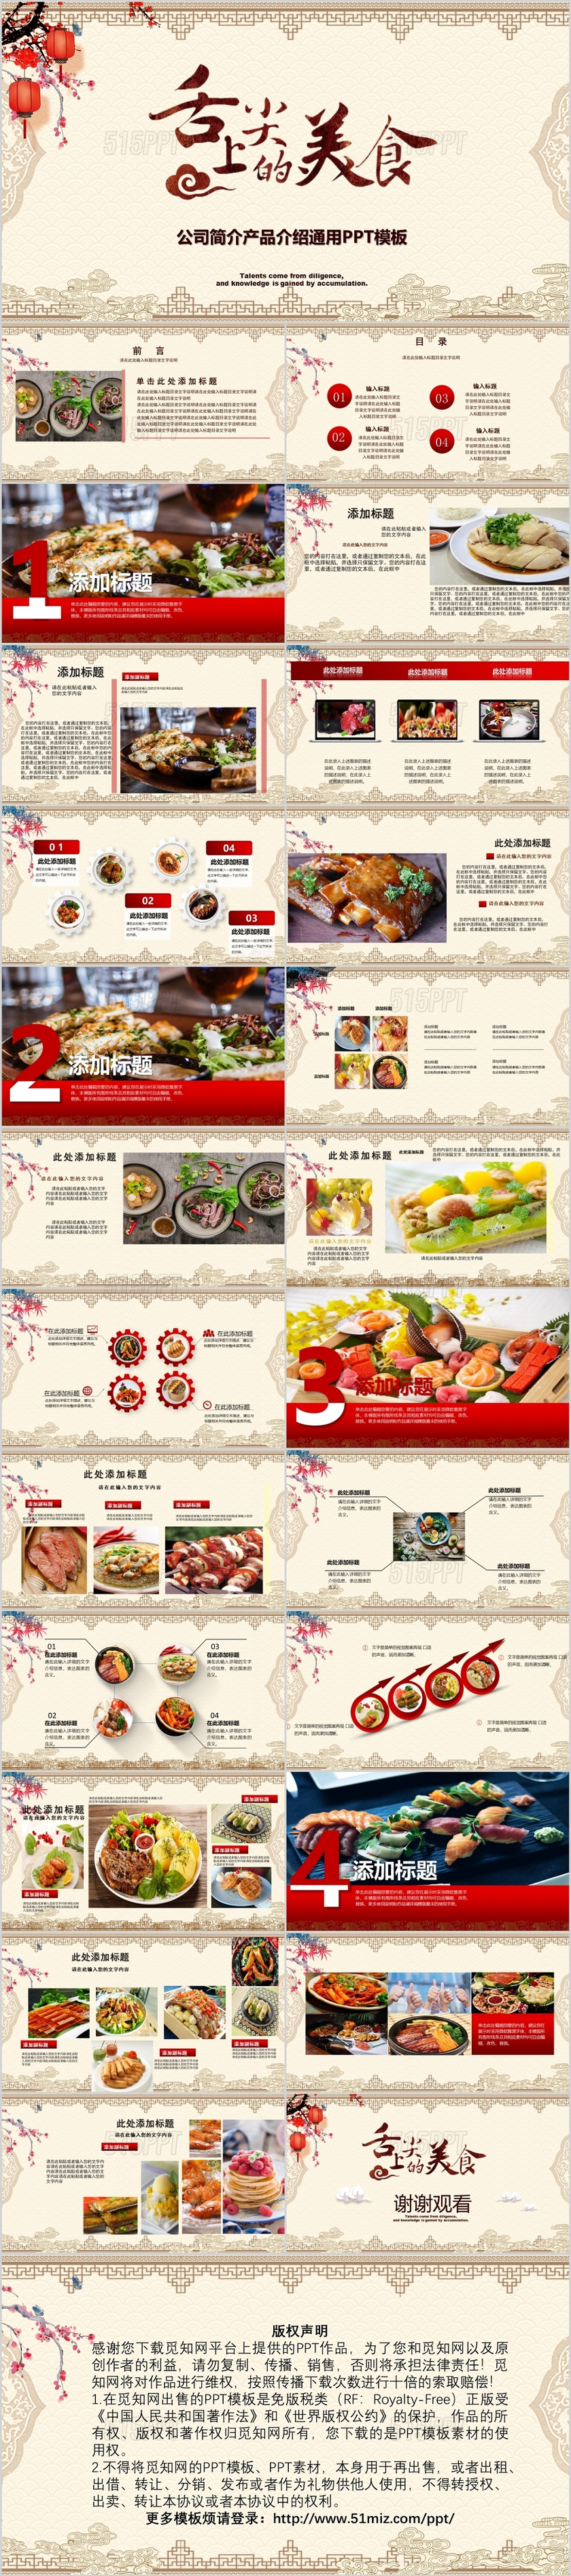 中国传统文化饮食餐饮美食ppt模板